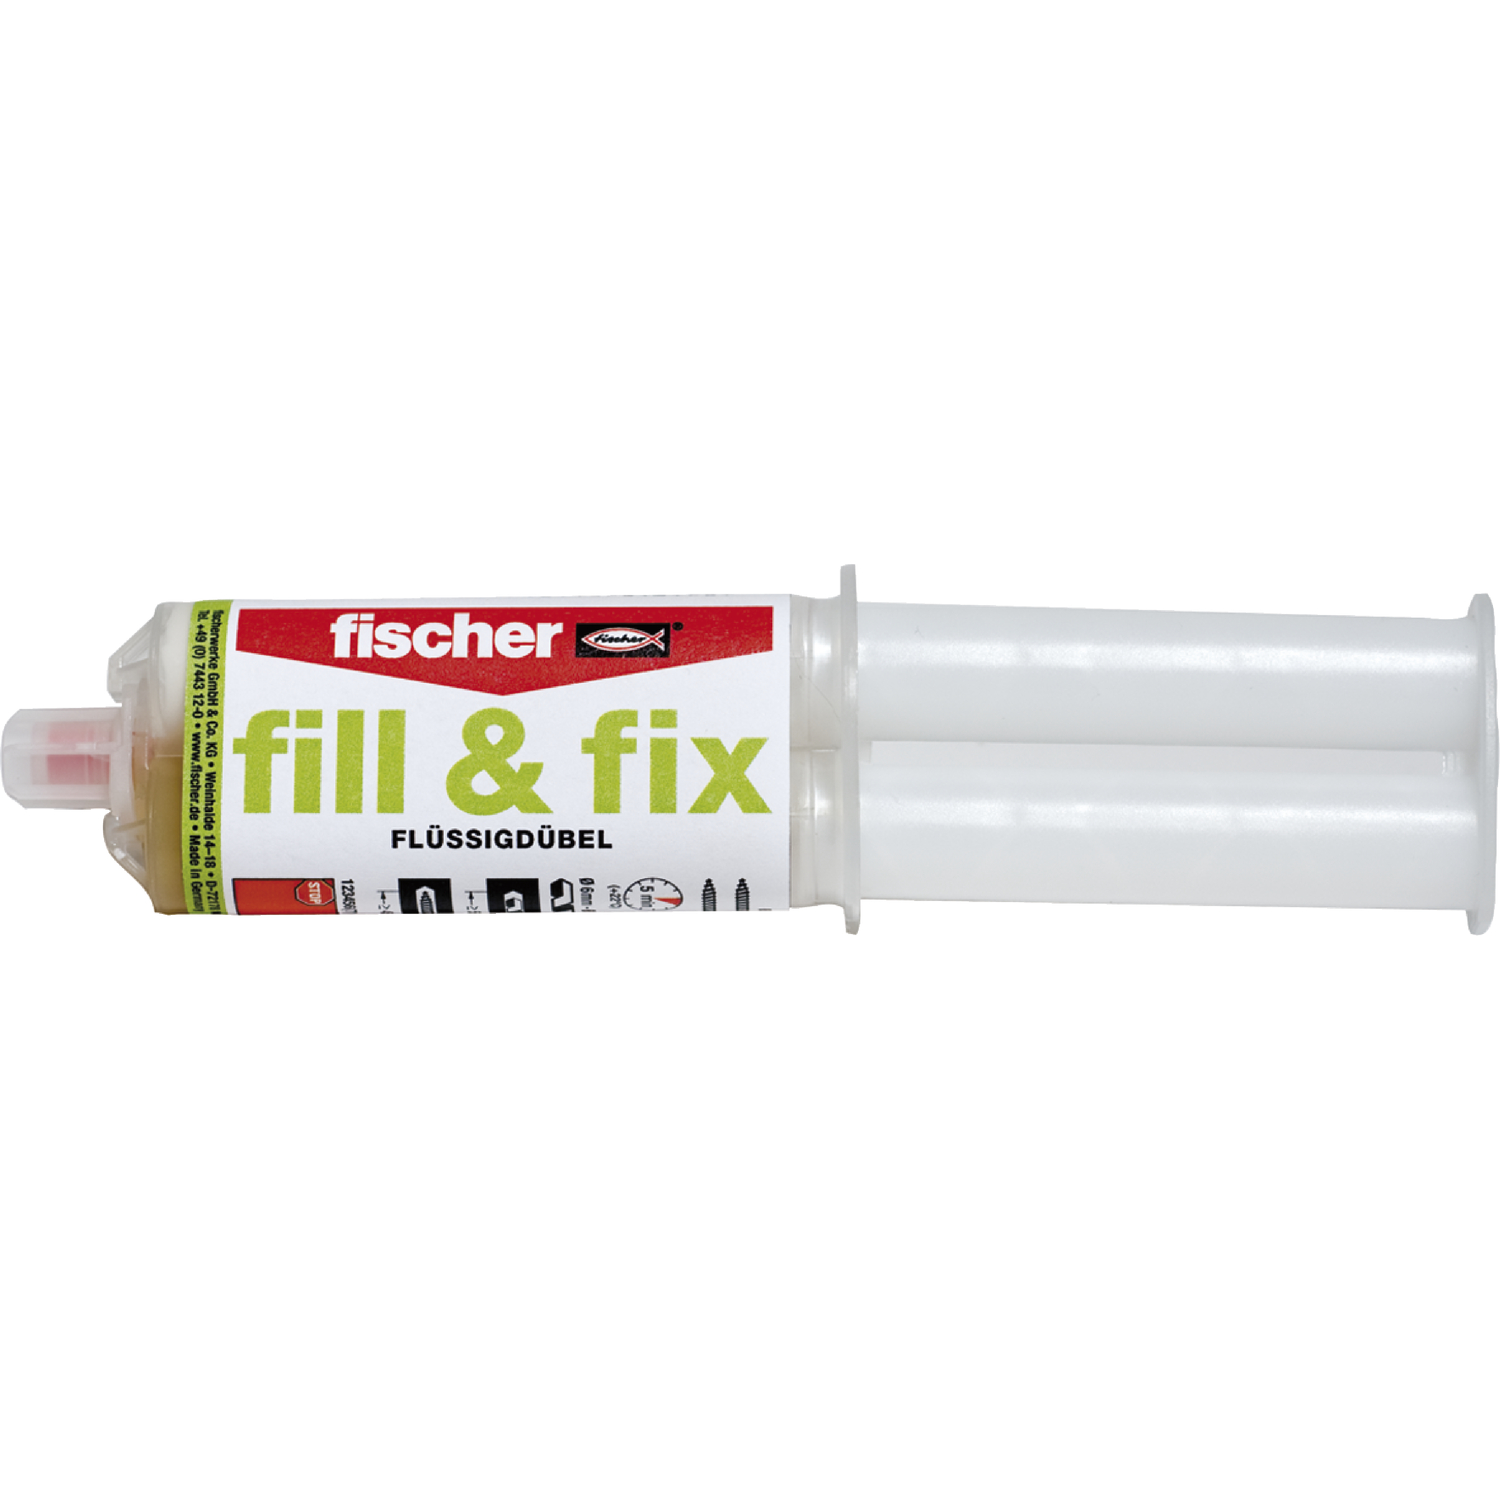 Fischer fill & fix Flüssigdübel zum Ausfüllen und Reparieren mit Siebhülse 25ml